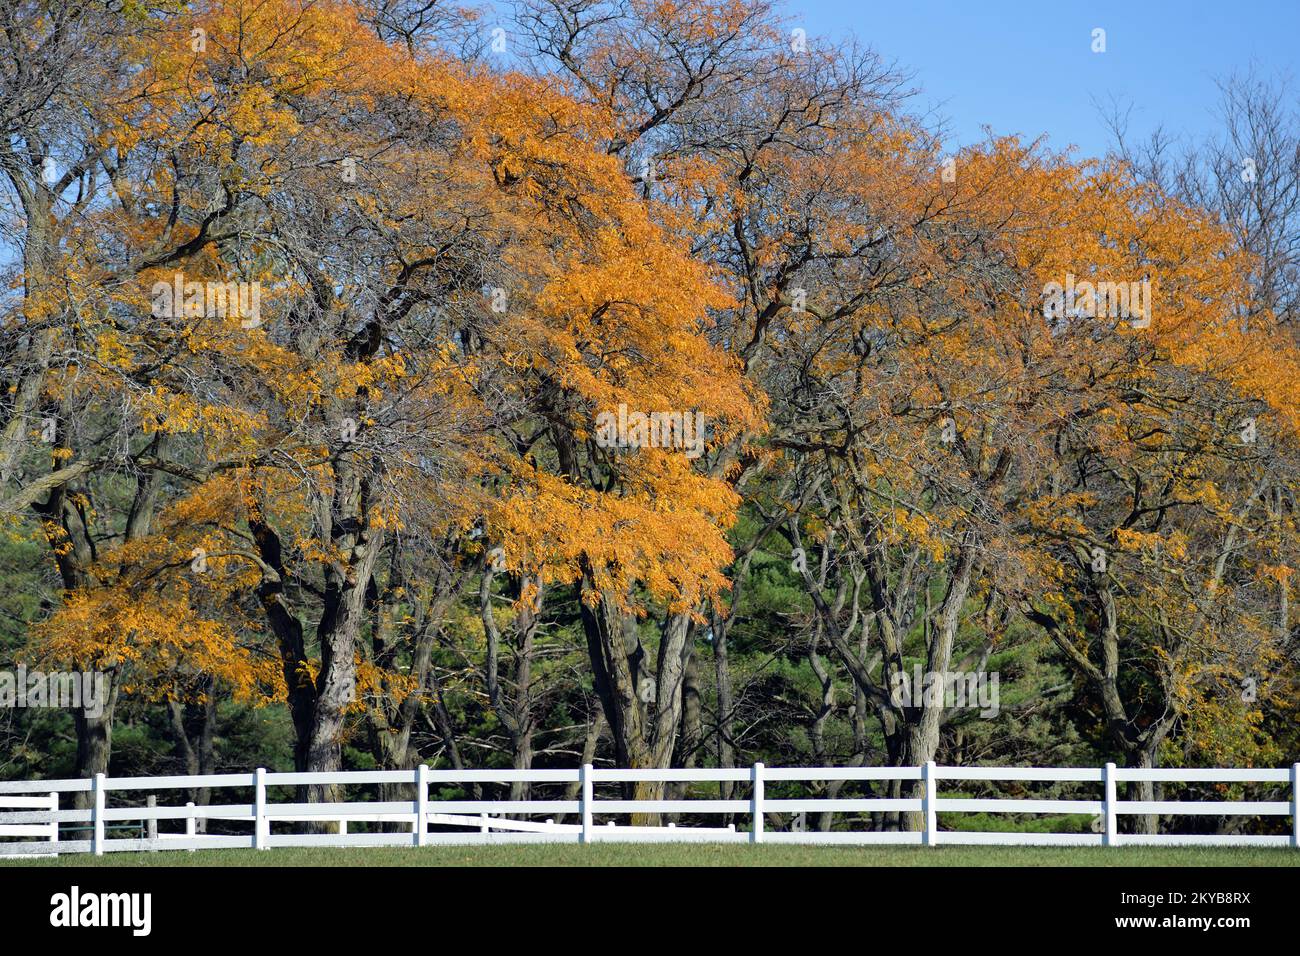 Warrenville, Illinois, États-Unis. La beauté et la couleur de la saison d'automne en évidence dans une ferme dans le nord-est de l'Illinois. Banque D'Images